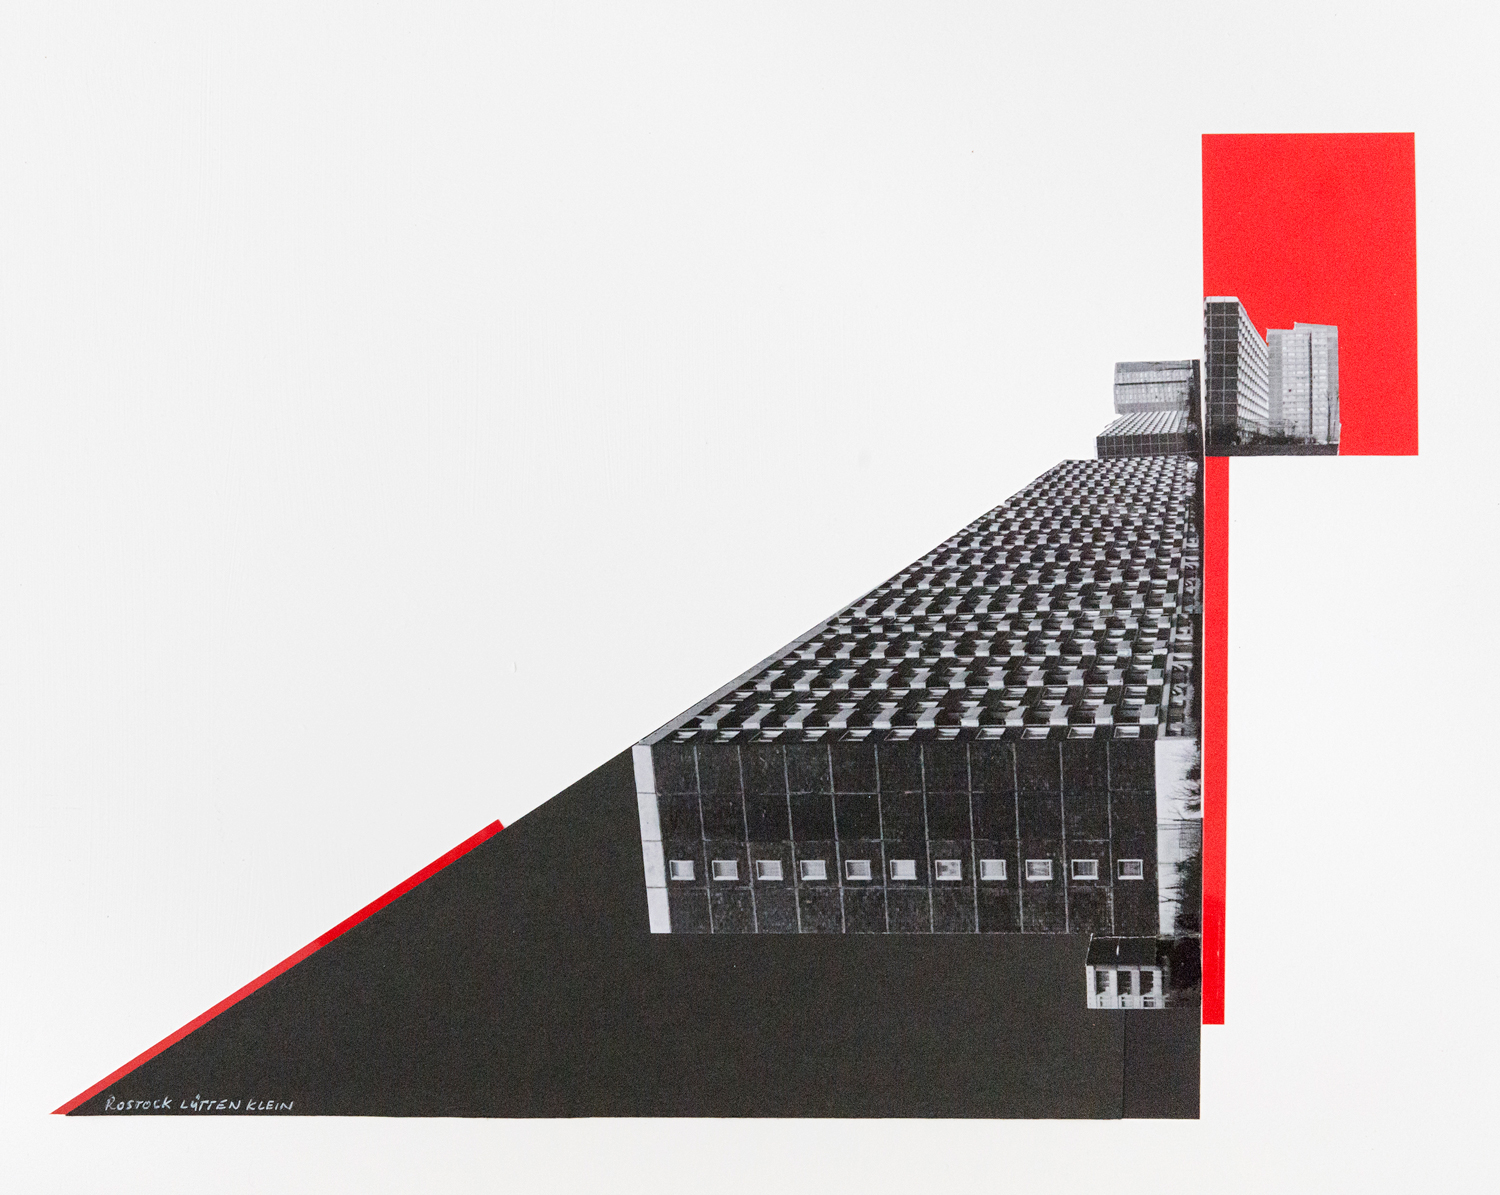 Wenke Seemann
Rostock Lütten Klein #1, 2020,
aus der Serie Deconstructing Plattenbau
Collage, 40 × 50 cm
© Wenke Seemann